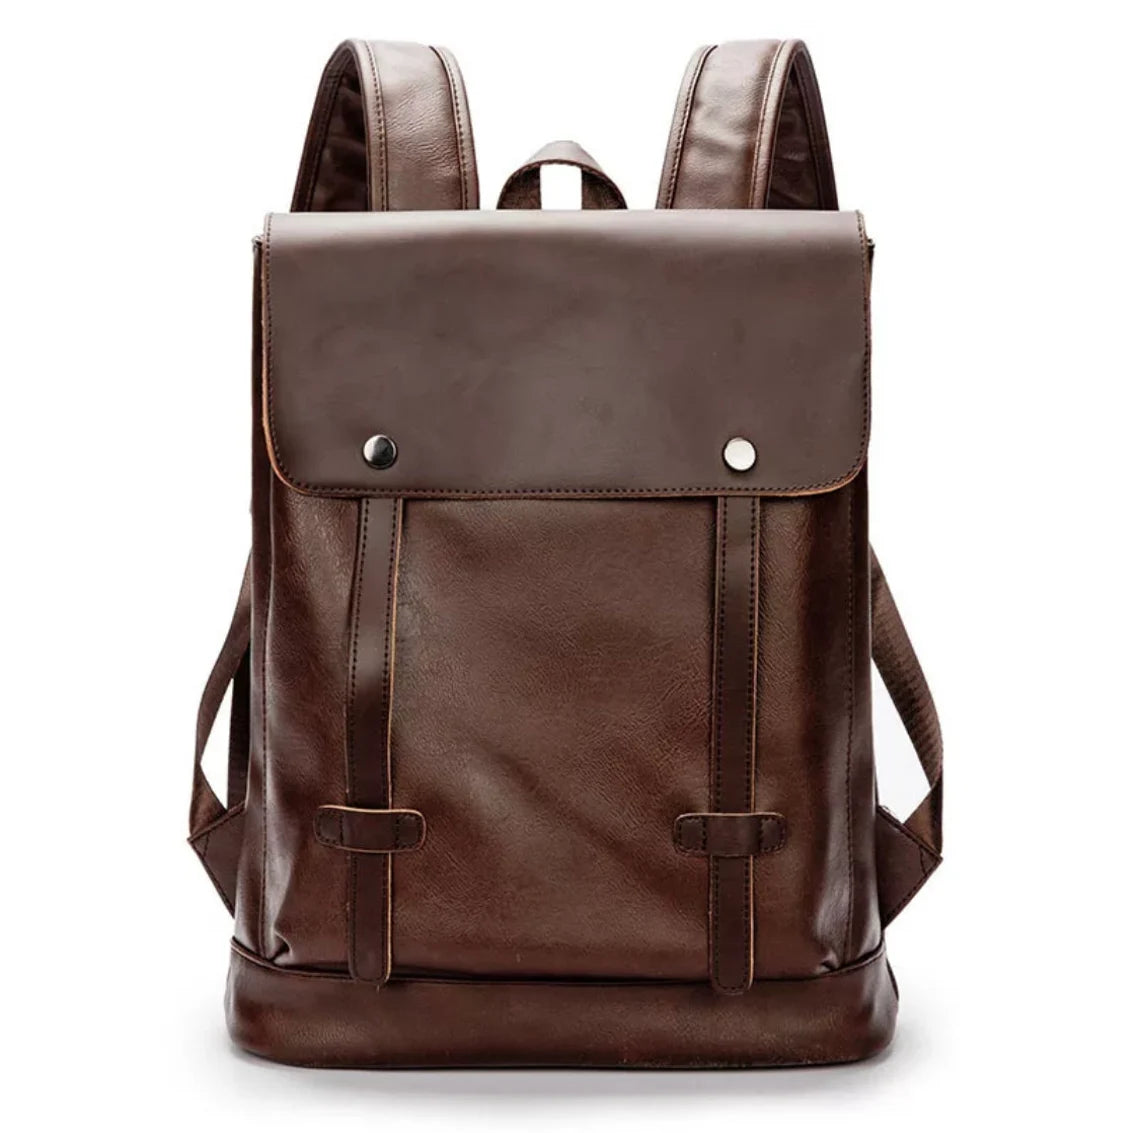 Women PU leather backpack, macbook backpack, leatherette rucksack